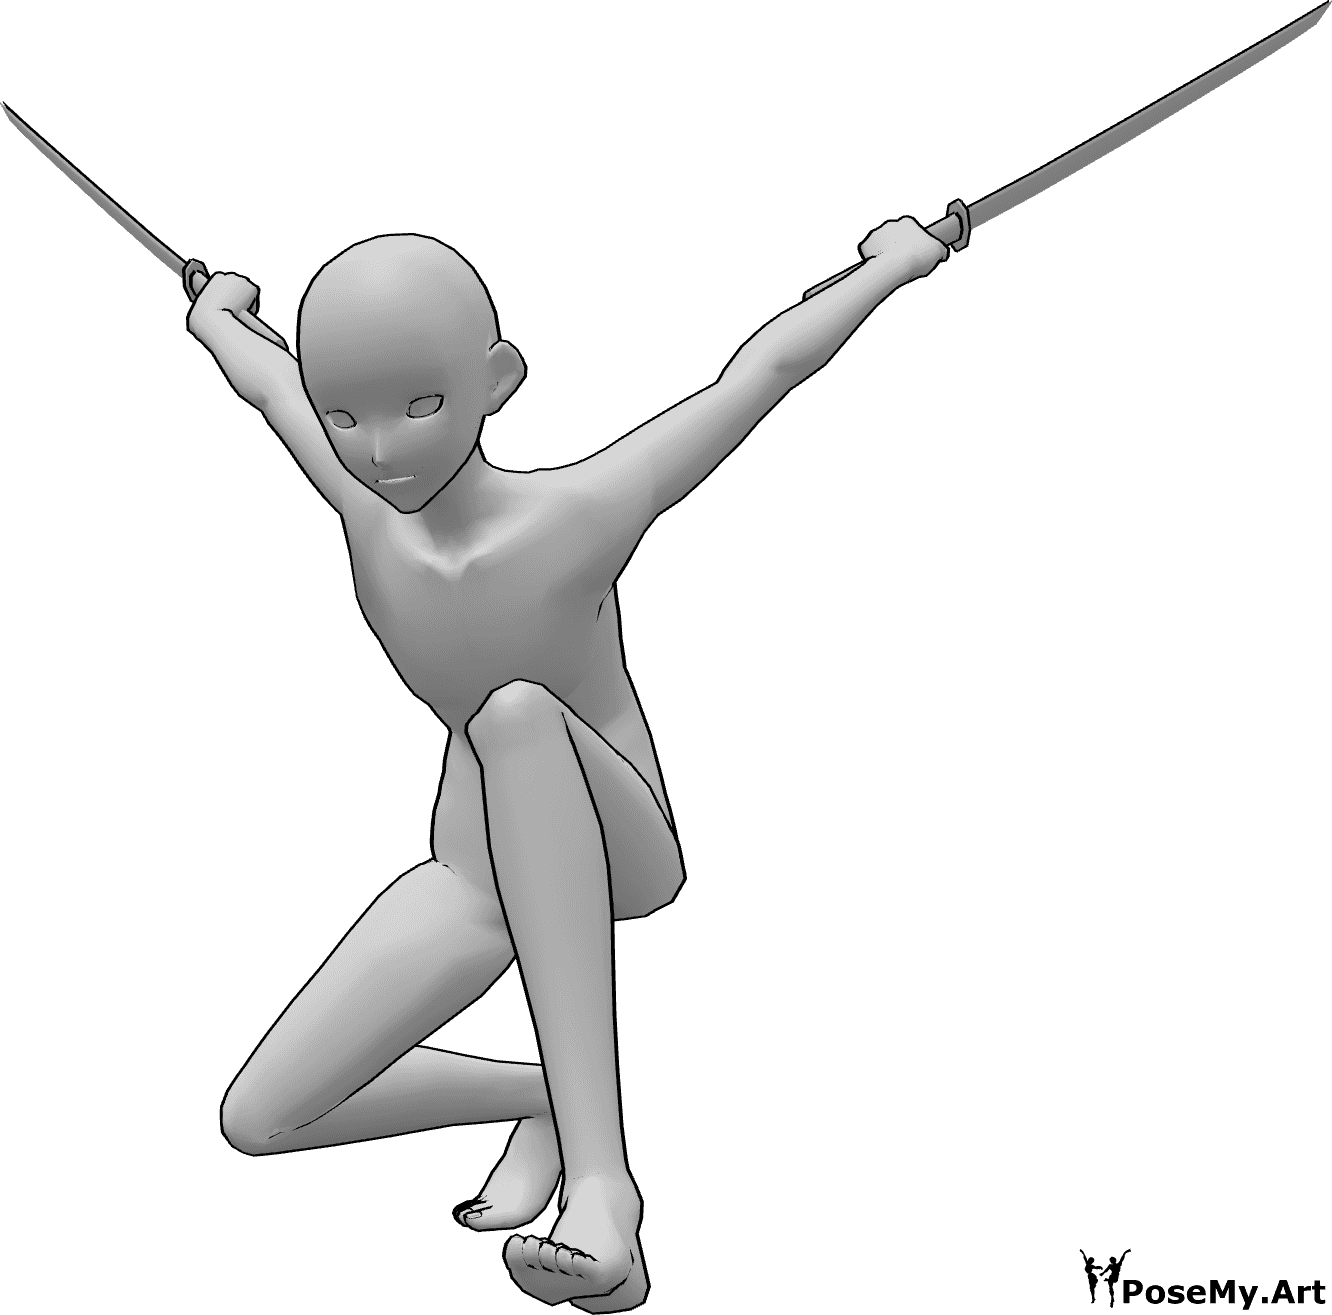 Référence des poses- Pose d'atterrissage d'un ninja de l'anime - Un homme animé atterrit sur le sol, tenant des katanas dans les deux mains.